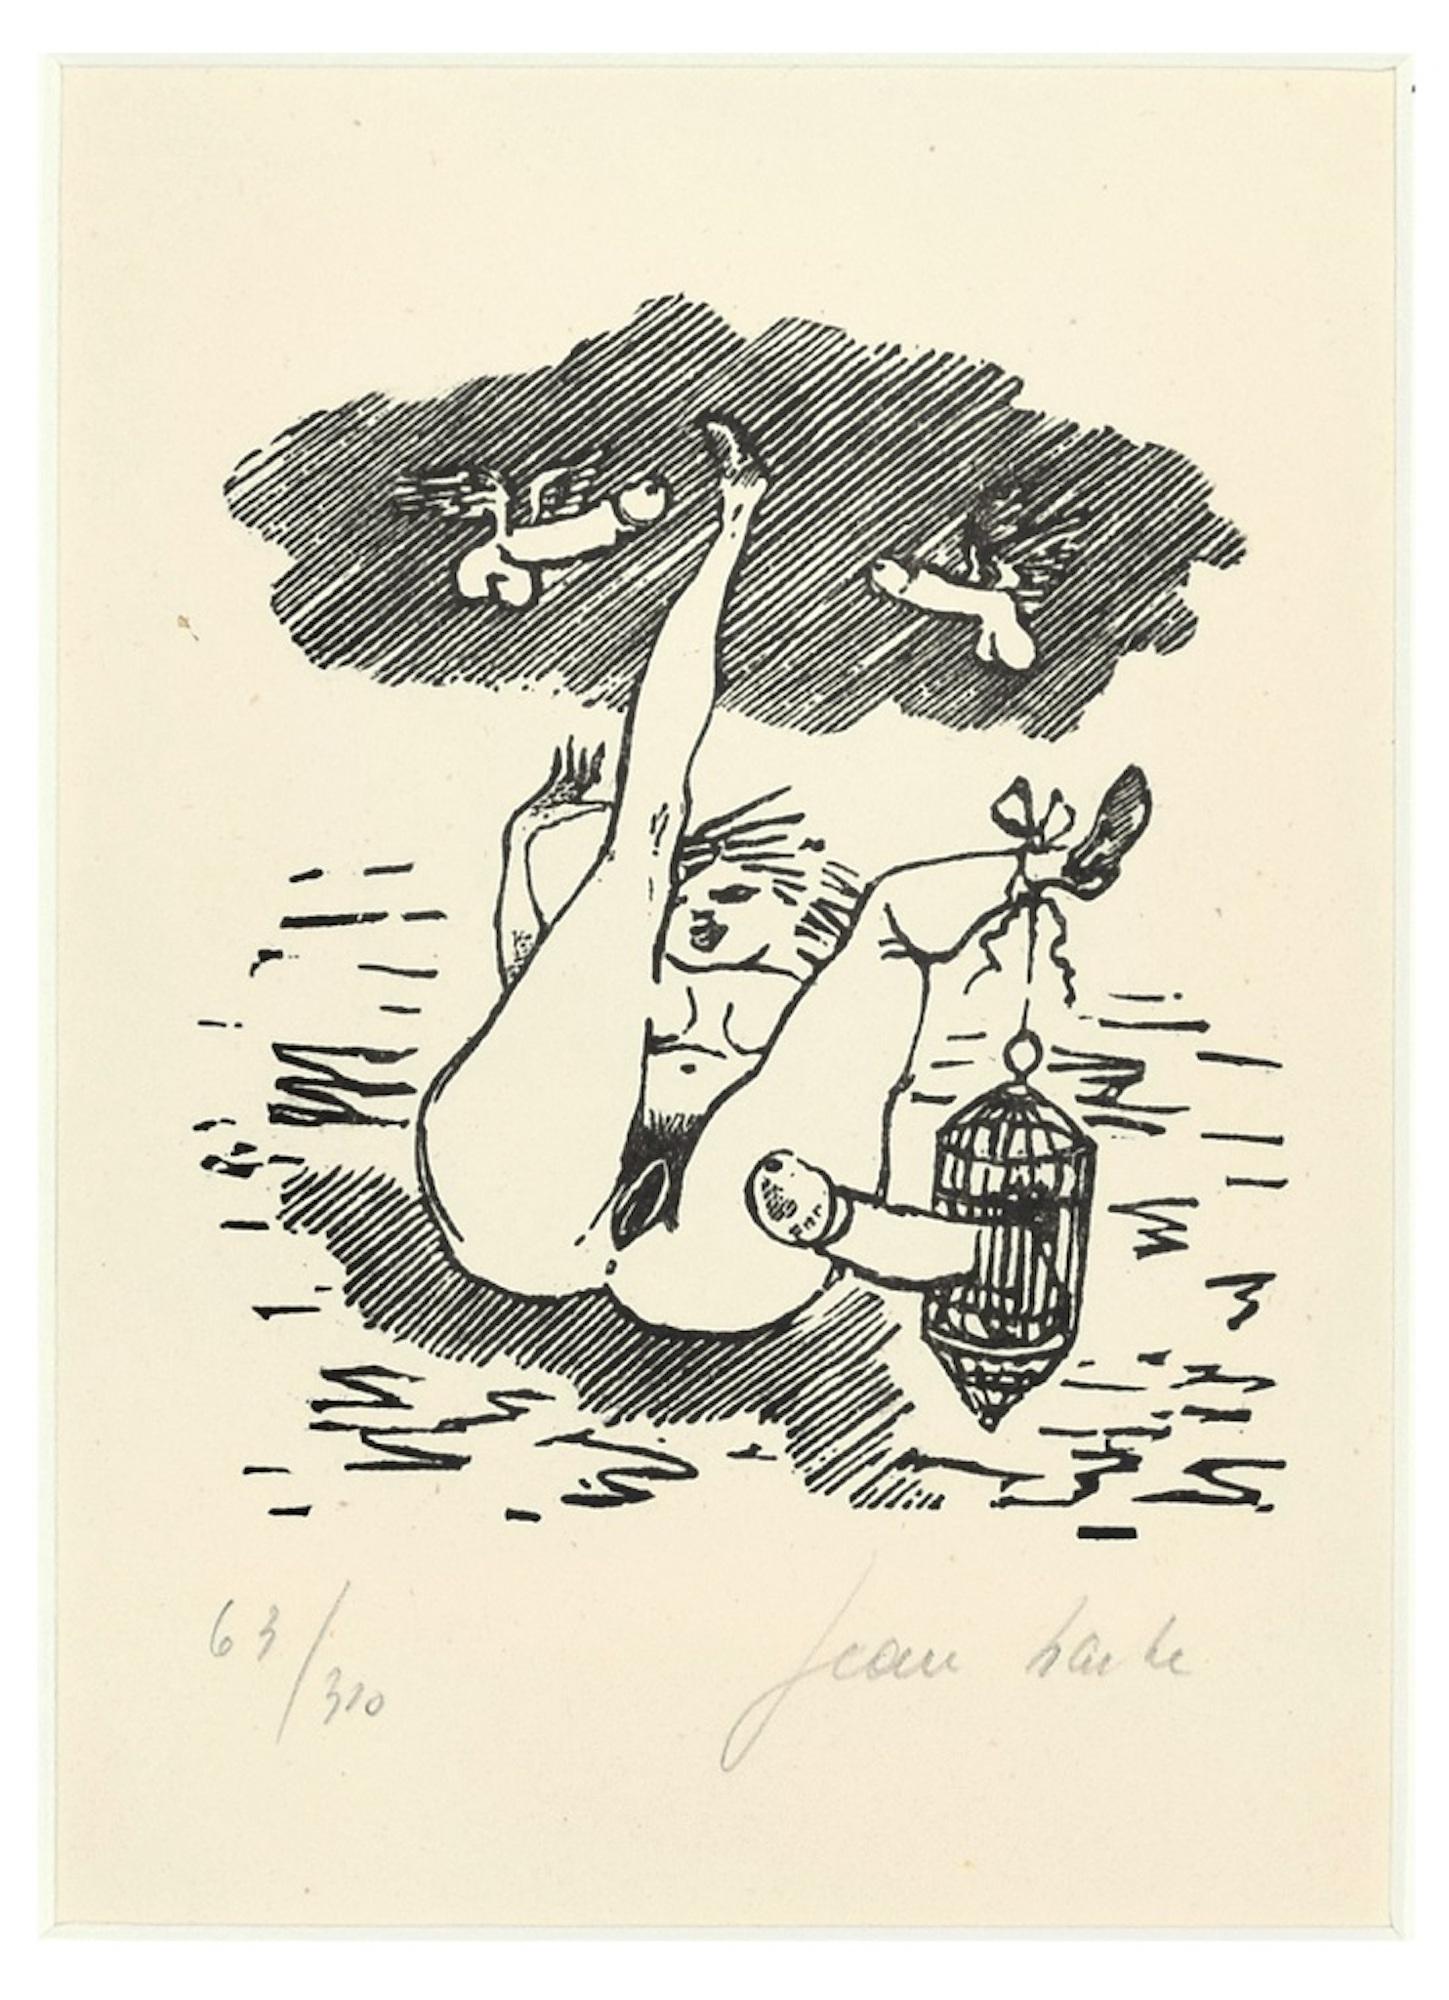 Sexual Desire - Linocut on Paper by Jean Barbe / Mino Maccari - 1945